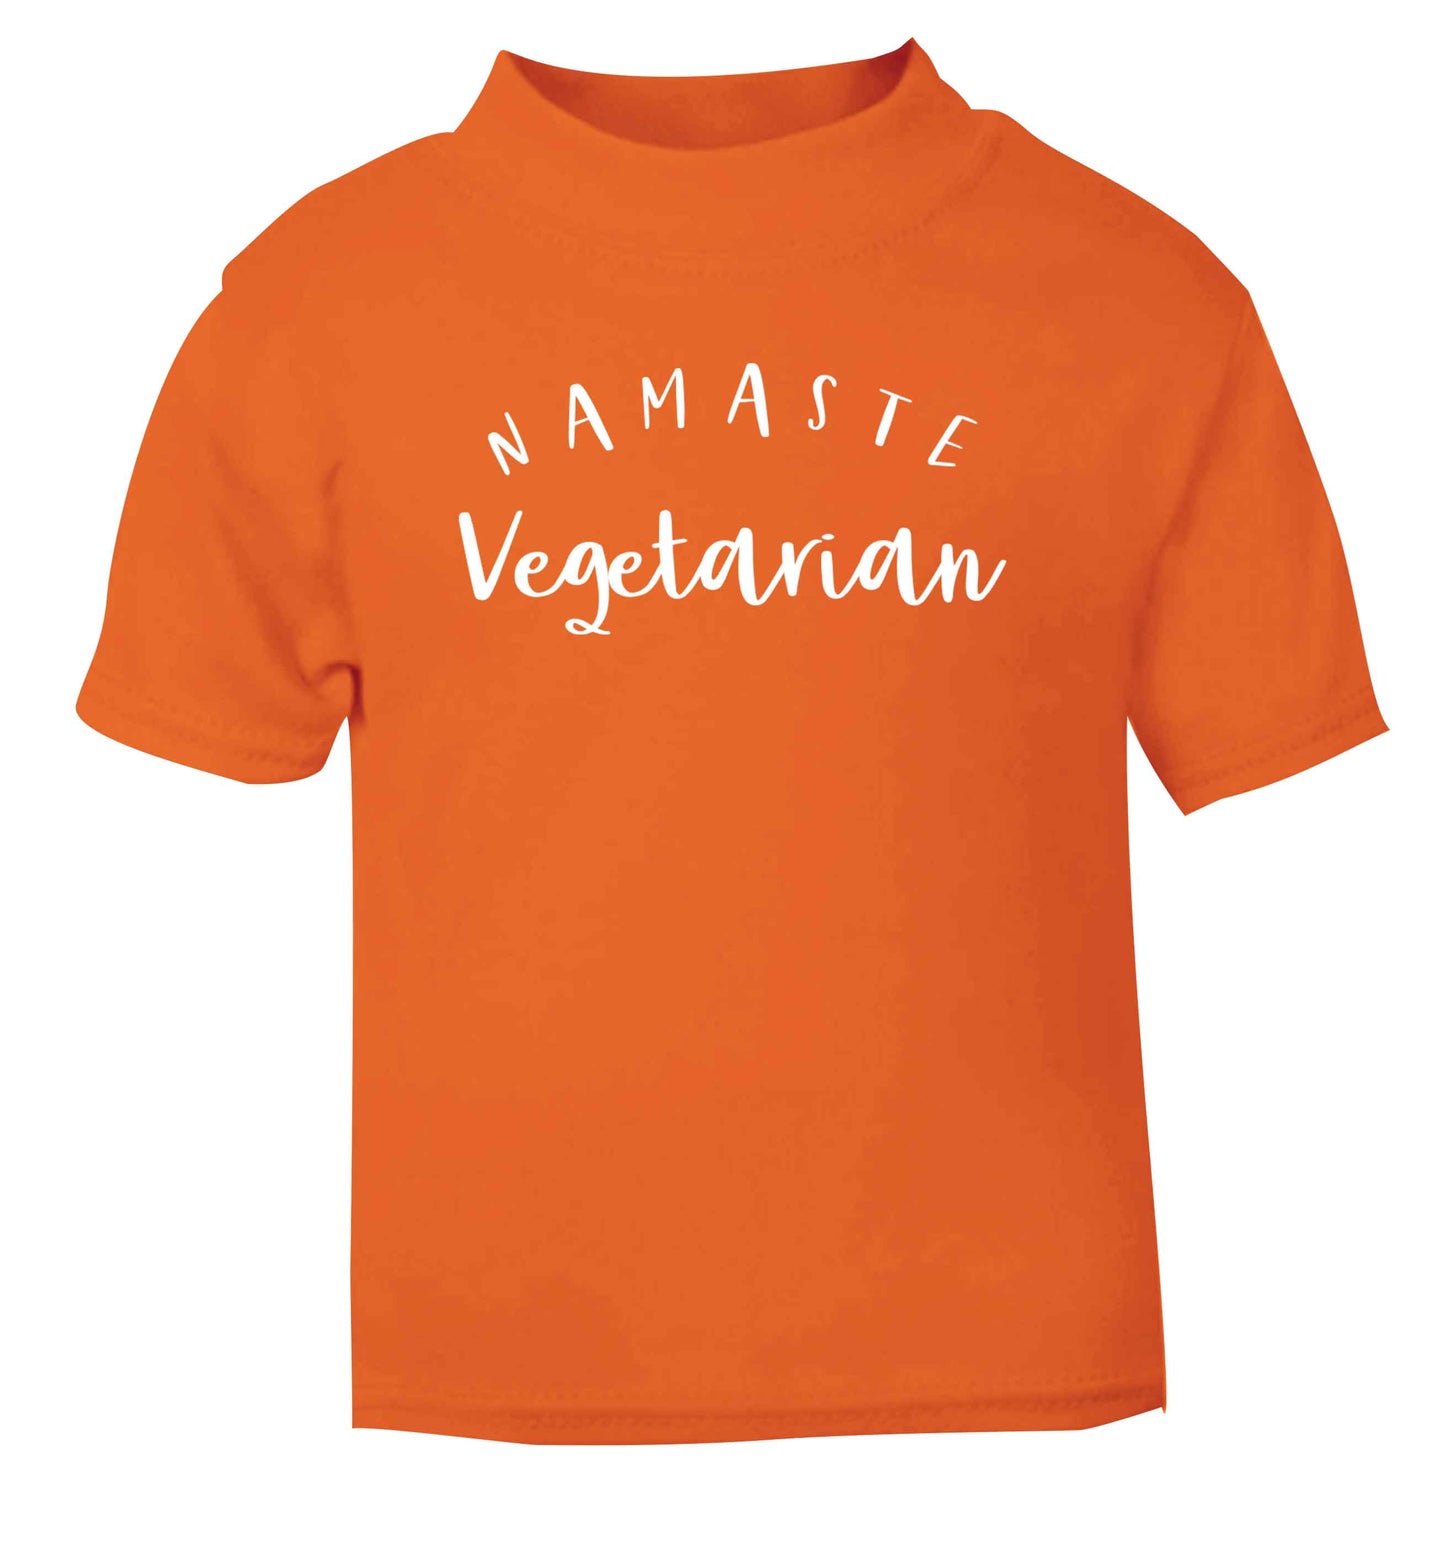 Namaste vegetarian orange Baby Toddler Tshirt 2 Years